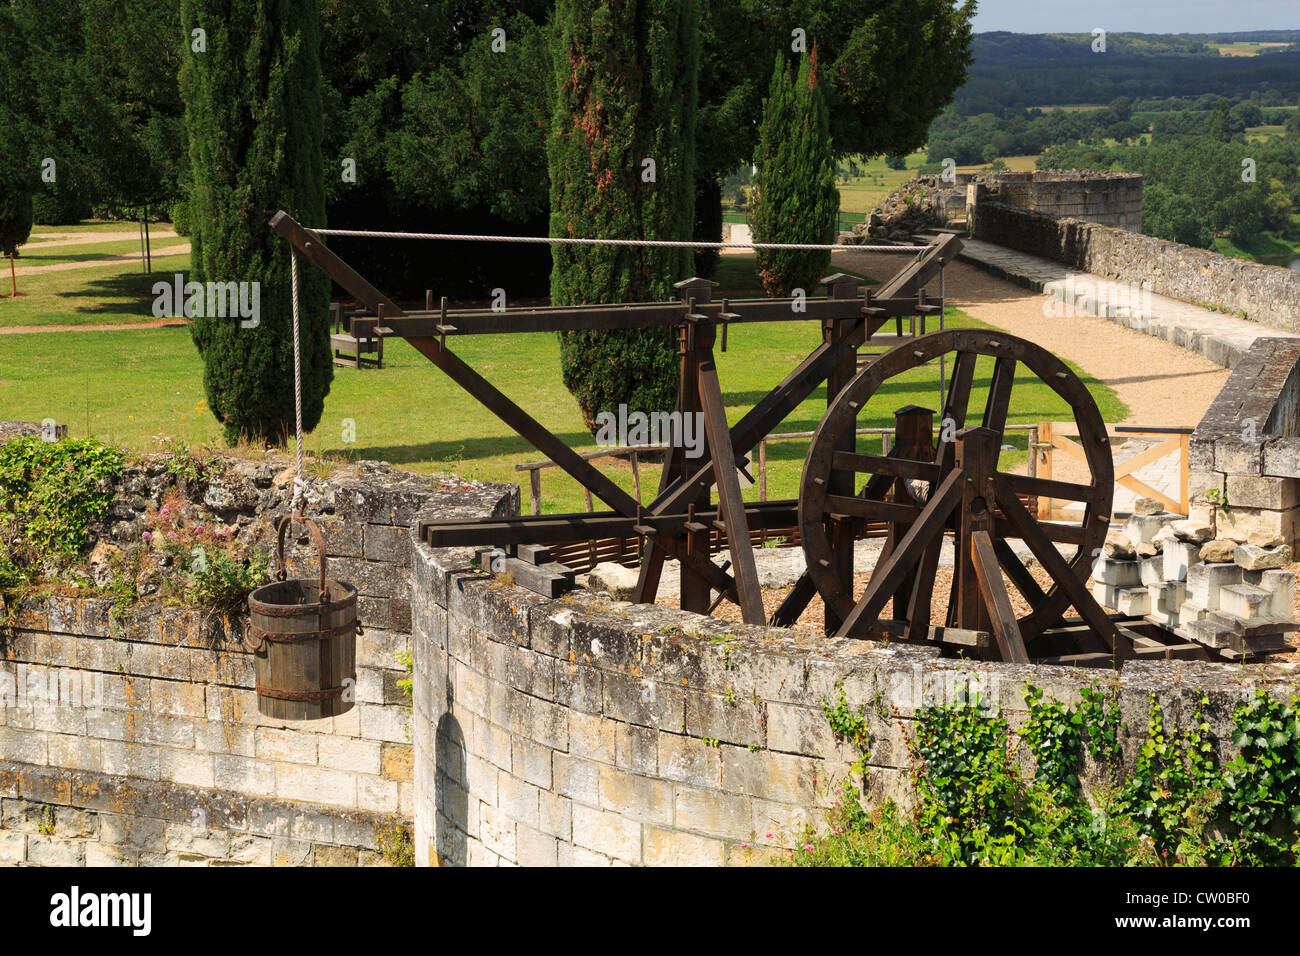 Heben die Maschine, Chinon, Loiretal, Frankreich, Replik einer Maschine zum Heben von Baustoffen im Mittelalter verwendet. Stockfoto